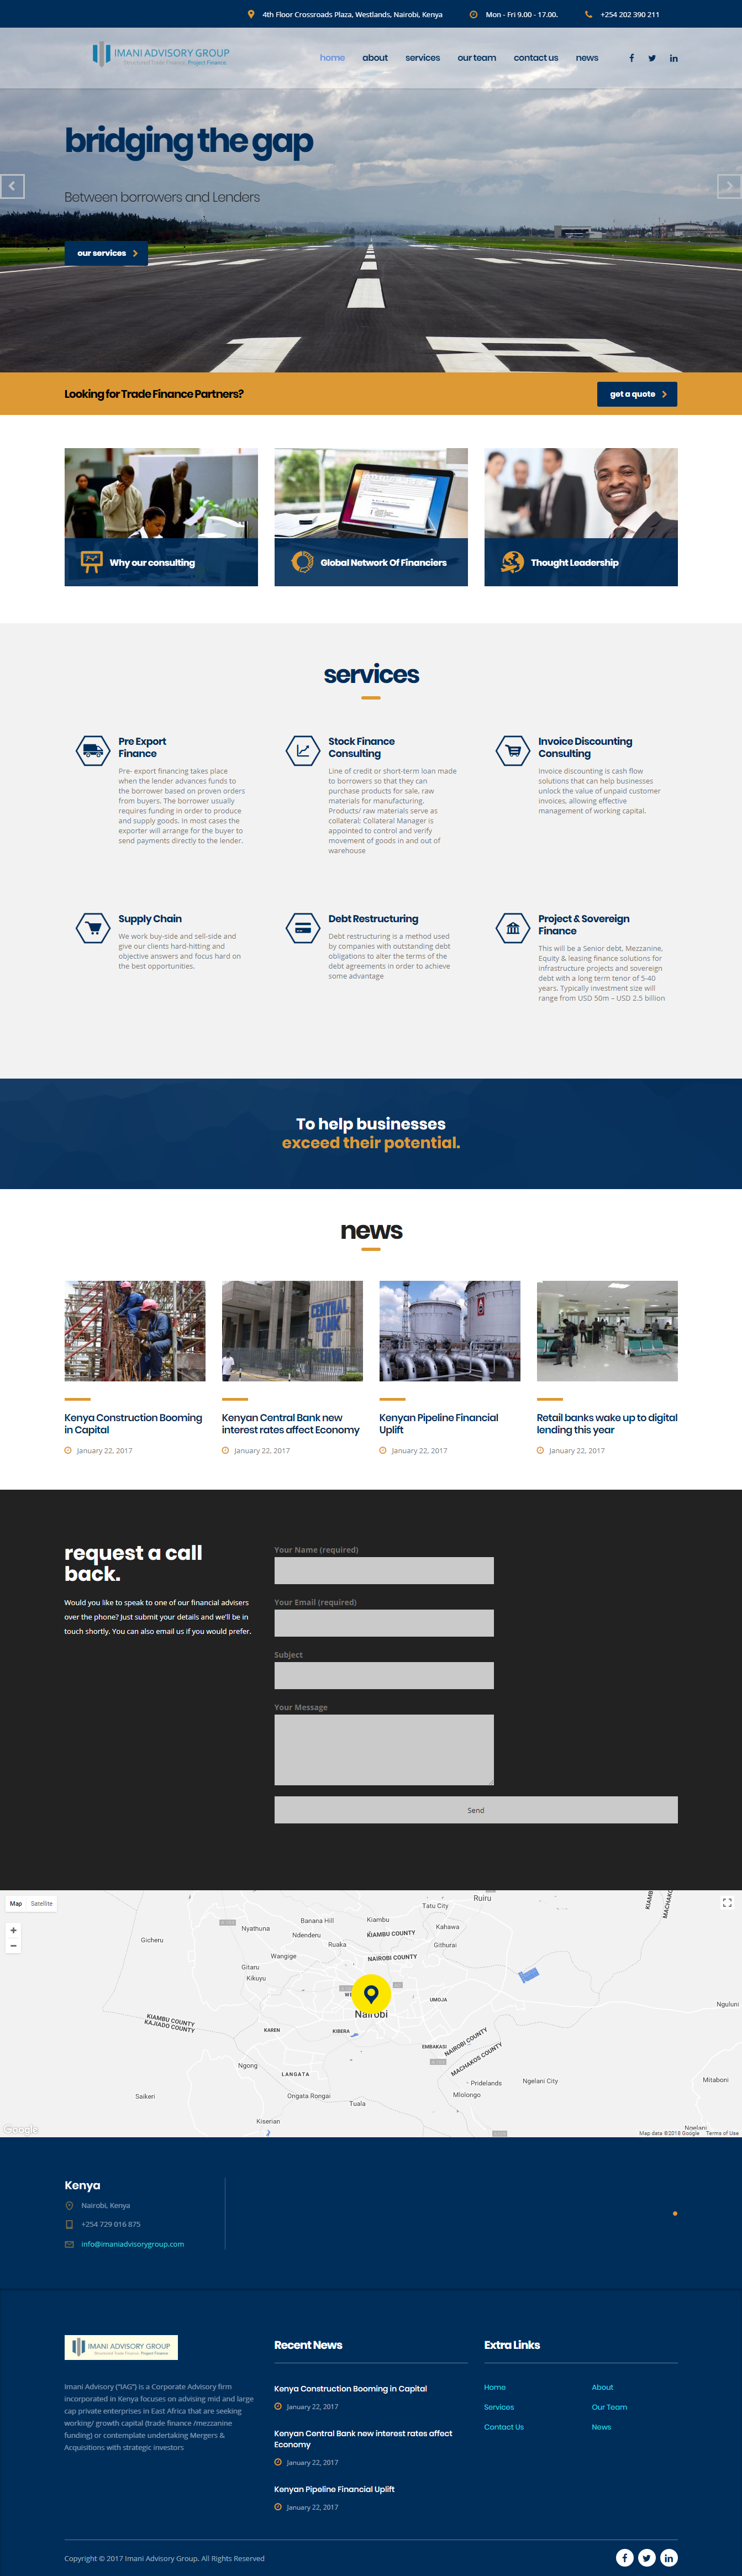 Imani Advisory Group Limited - Web Design